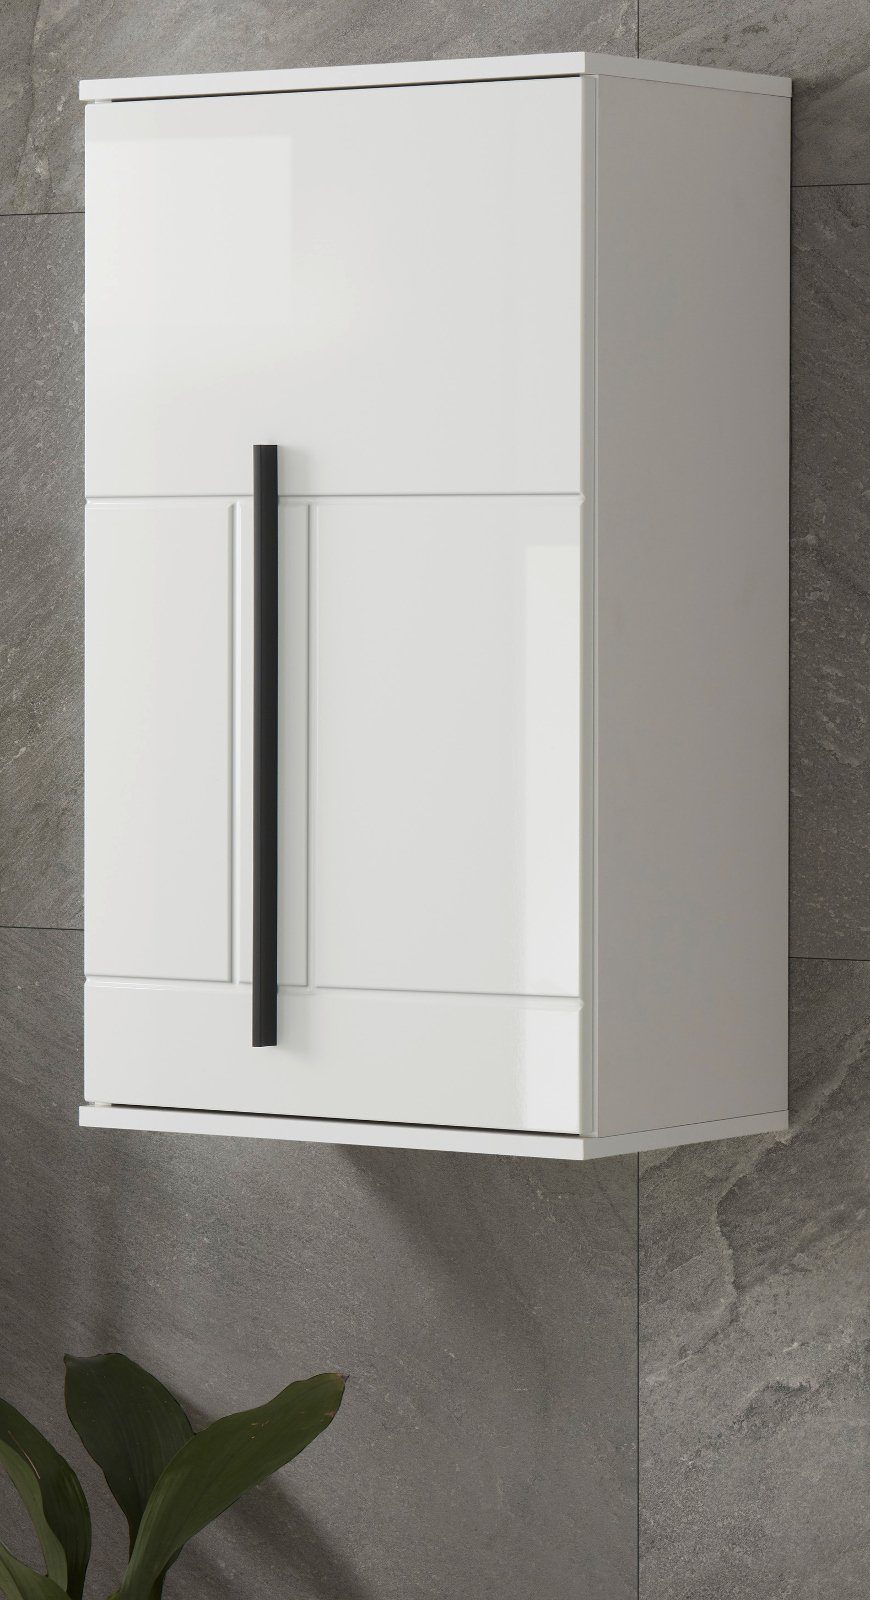 IMV Hängeschrank Design-D (Badschrank in weiß Hochglanz, 45 x 85 cm) mit viel Stauraum